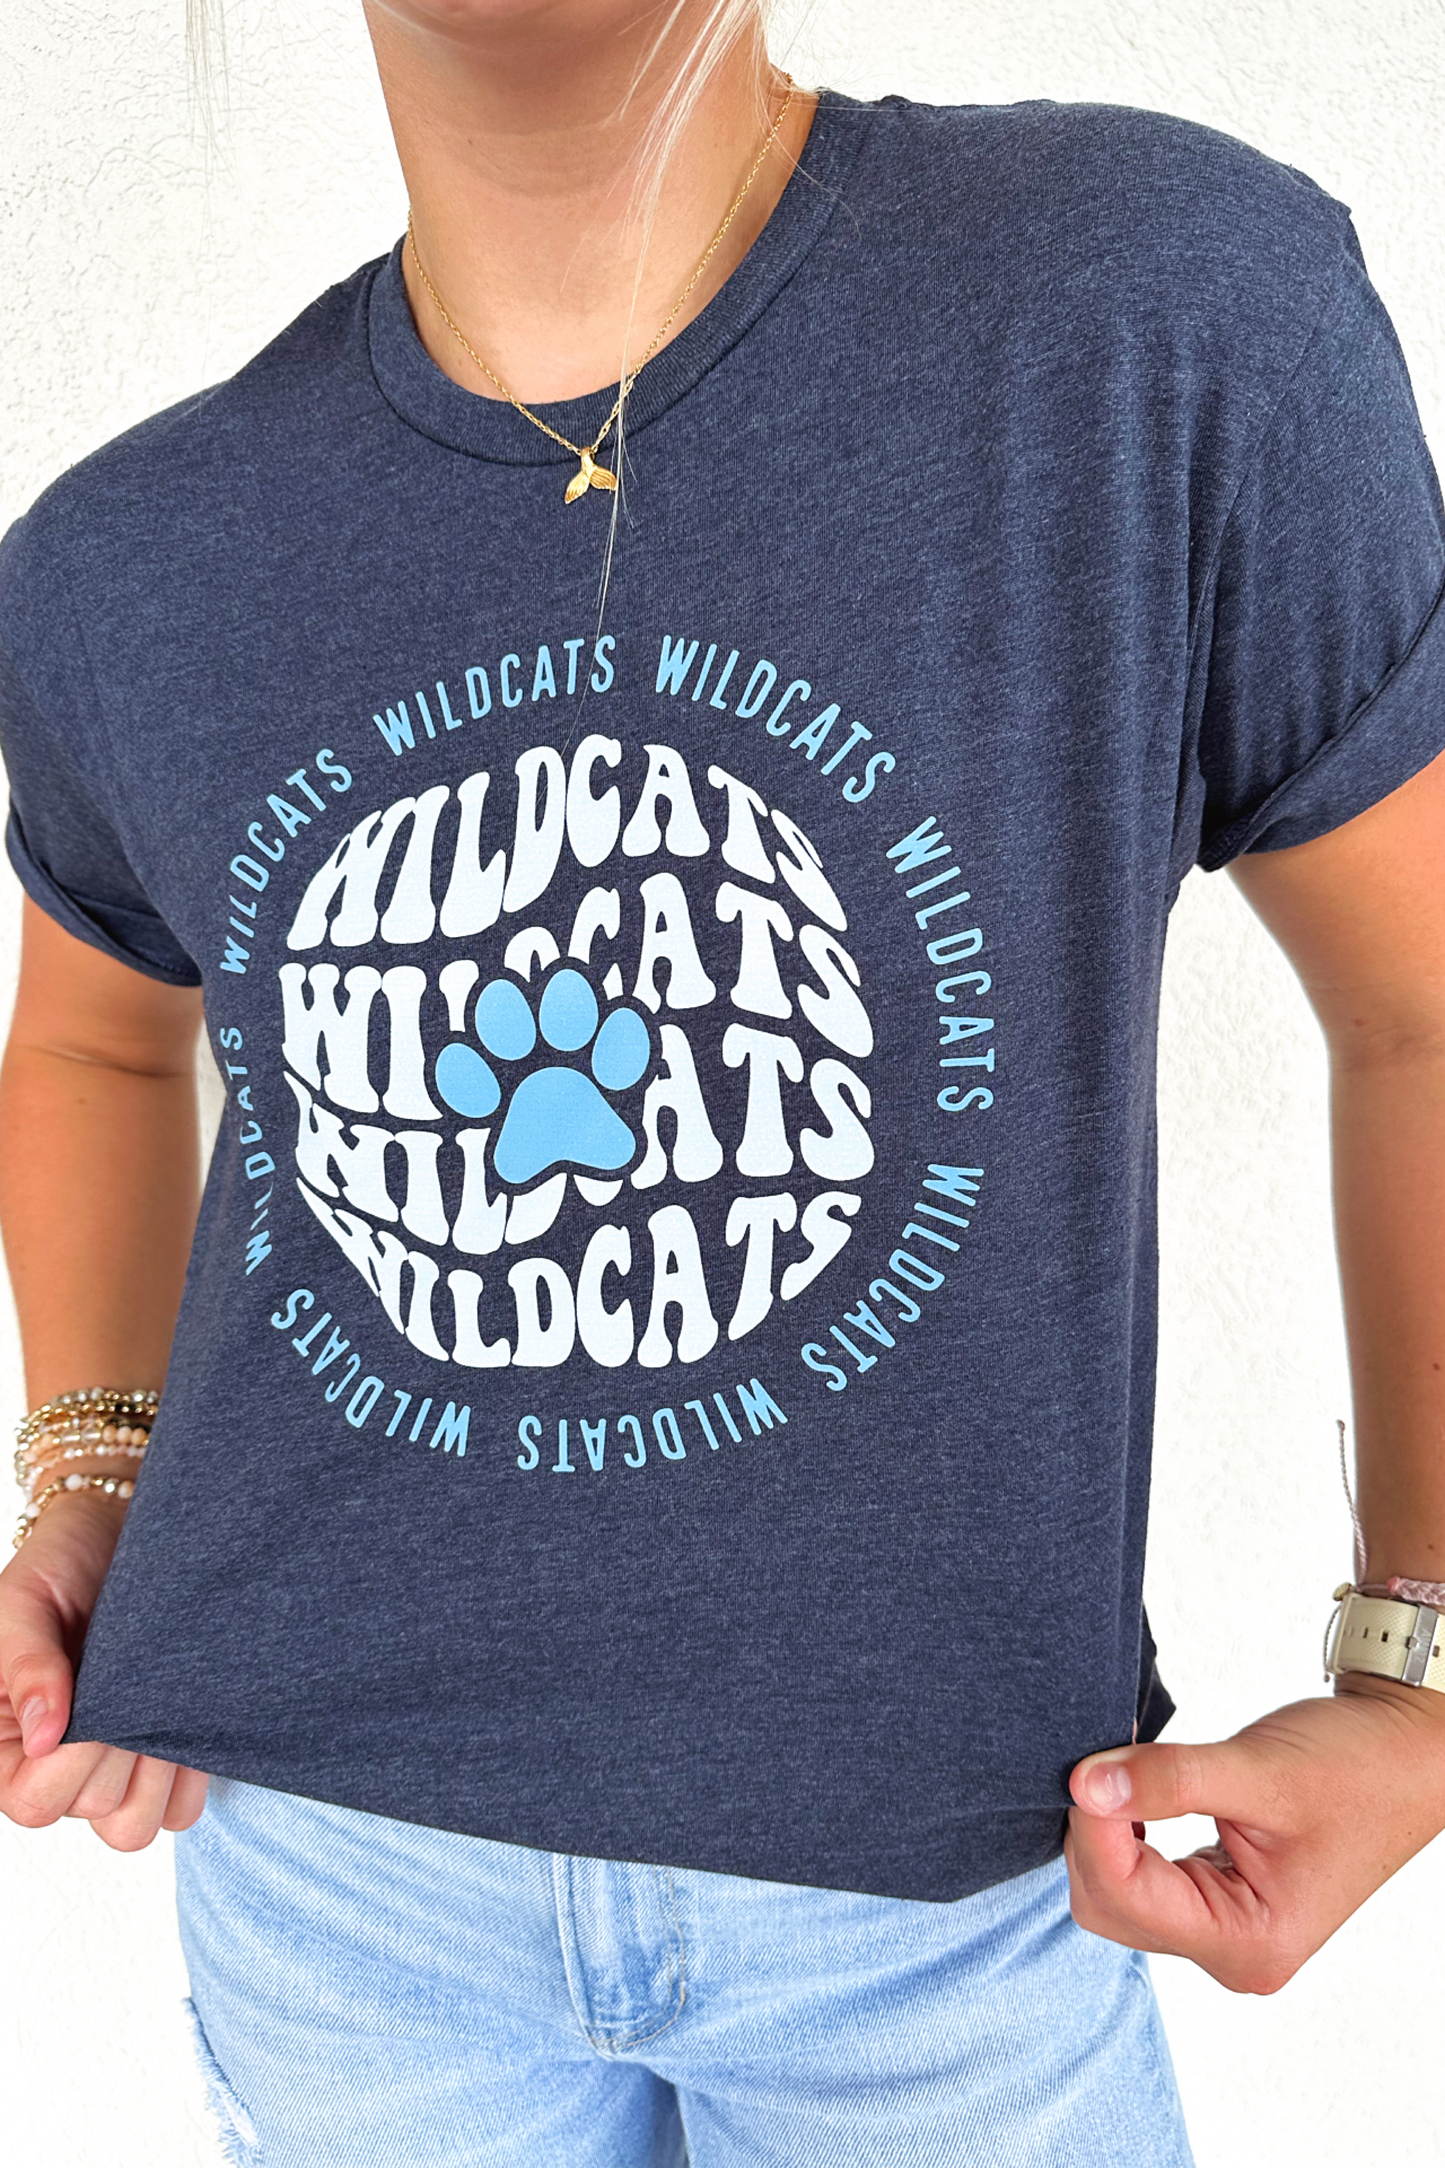 Wildcat Pride T-Shirt